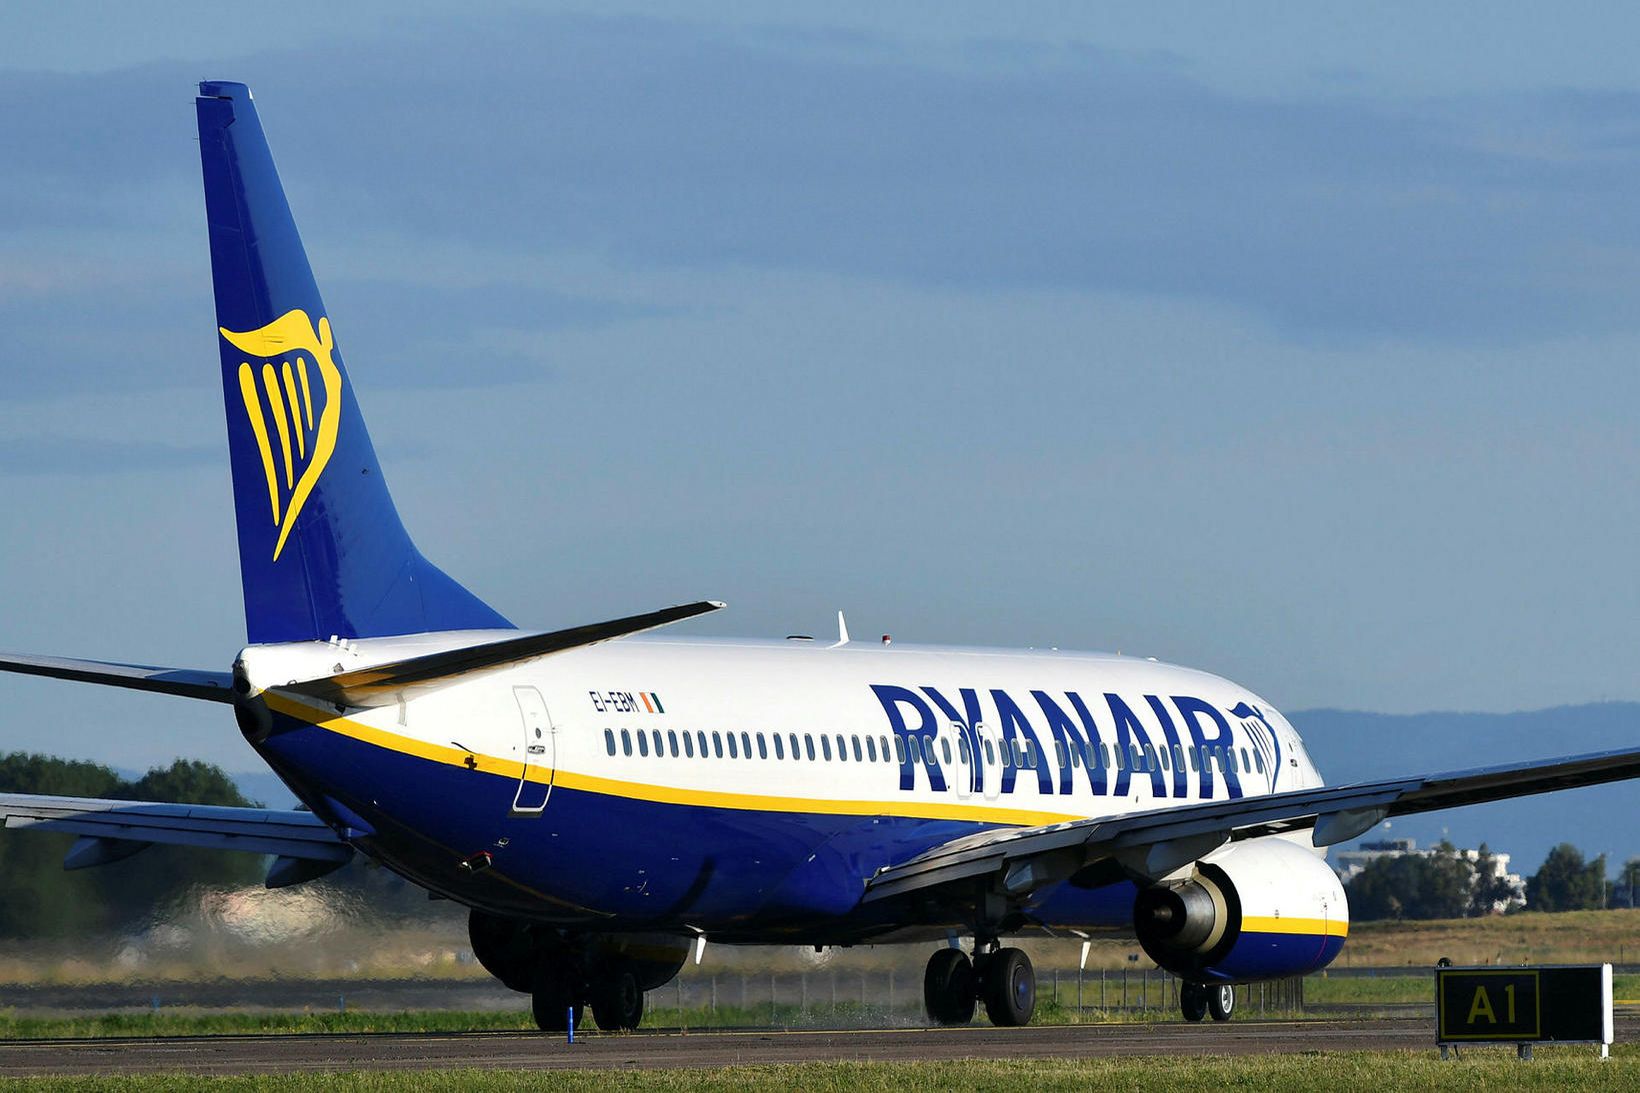 Boeing 737-vél frá Ryanair á Fiumicino-flugvellinum í Róm í fyrra.